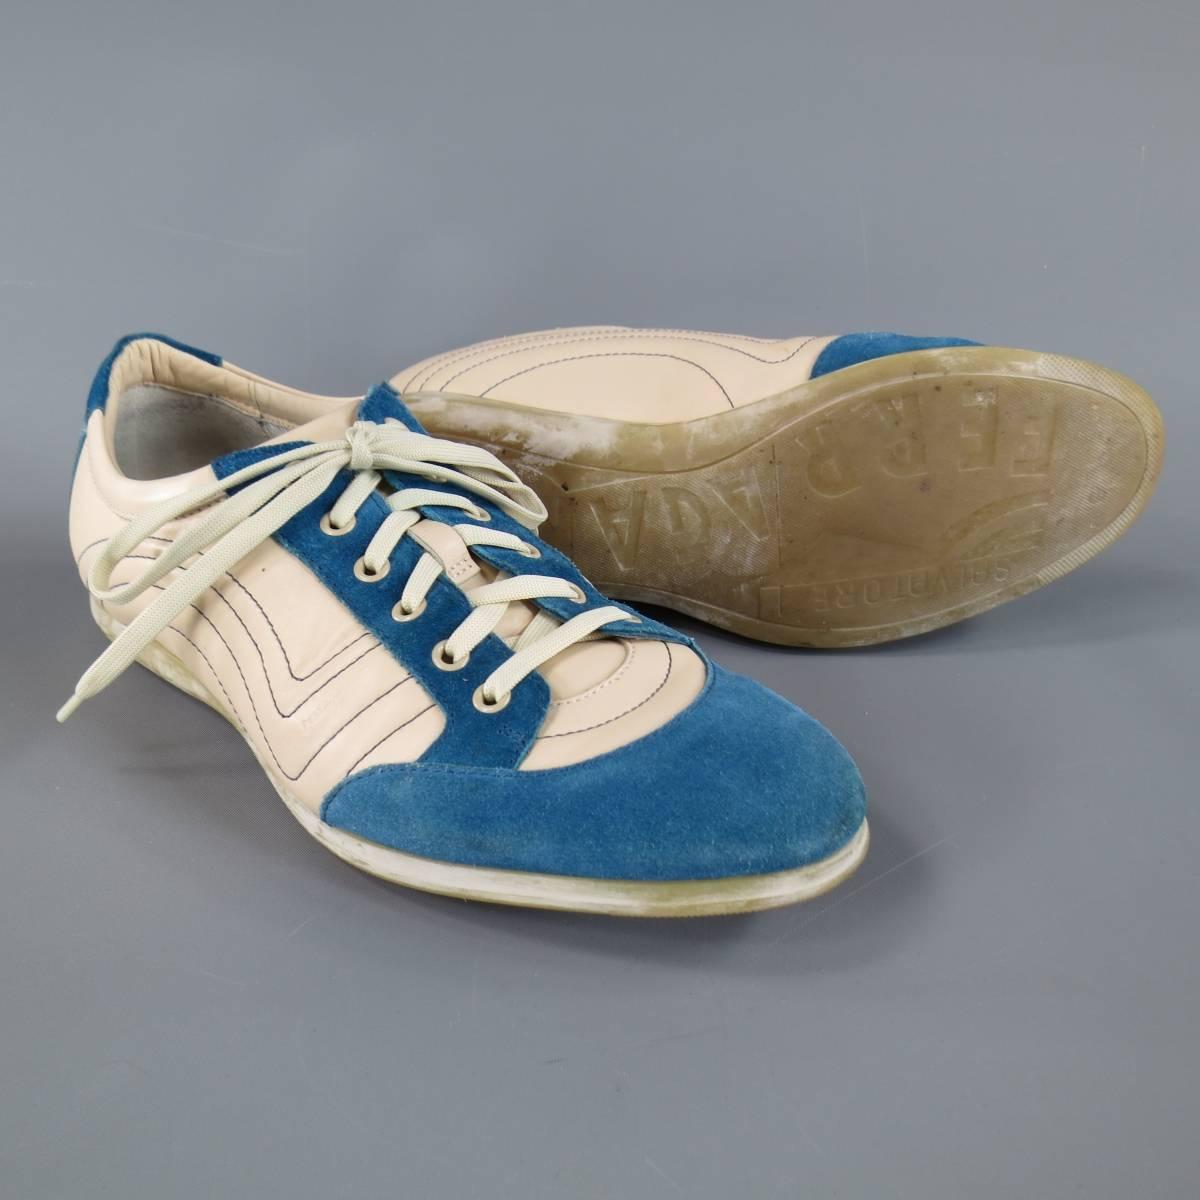 White Men's SALVATORE FERRAGAMO Size 8 Cream Leather & Blue Suede Sneakers